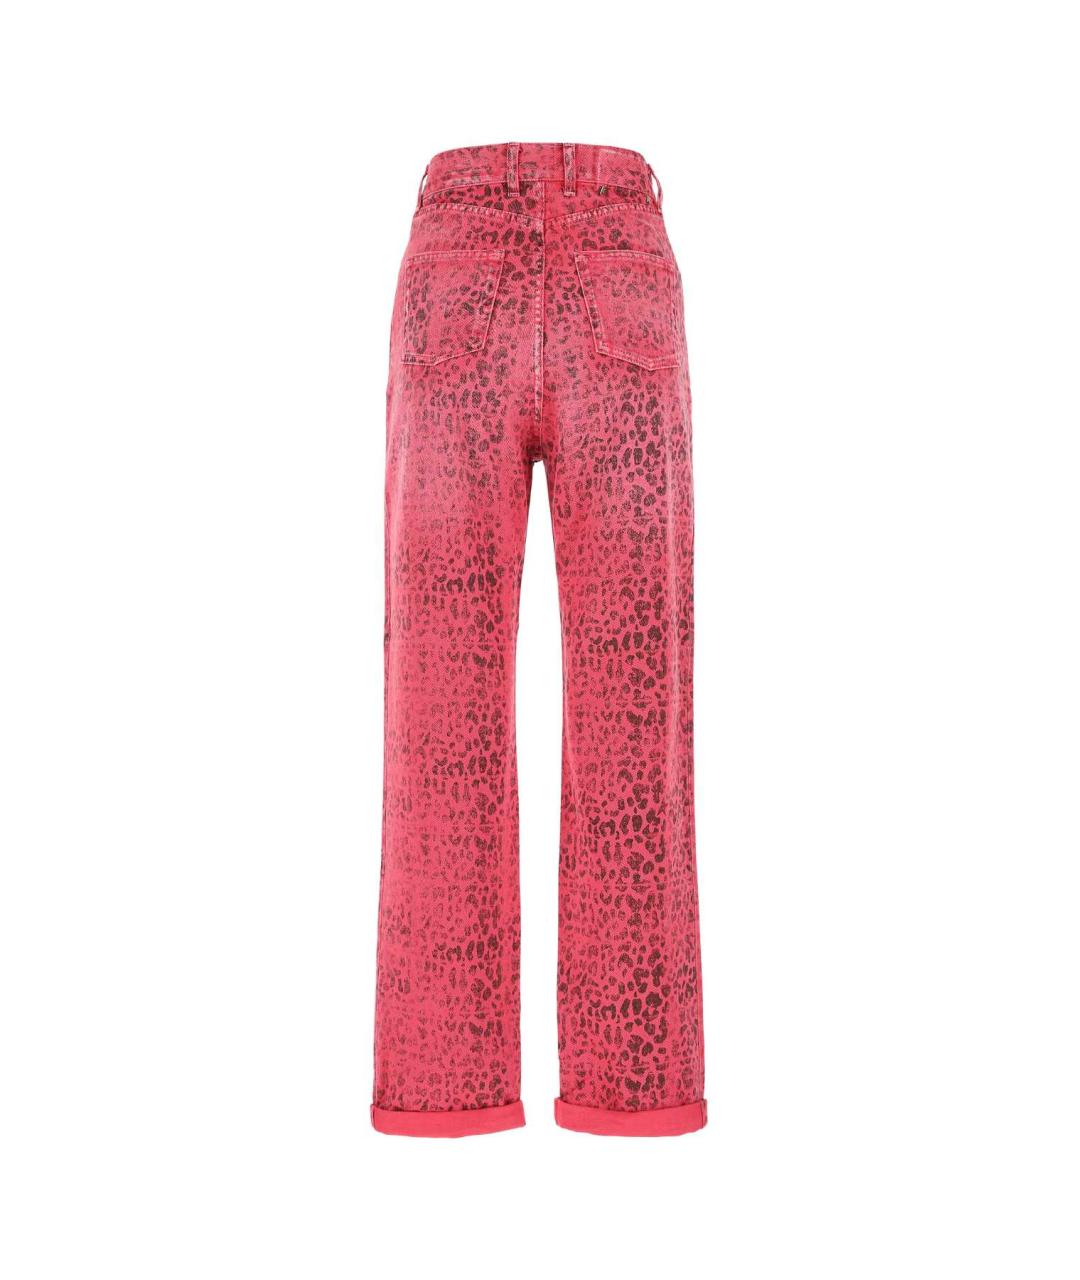 GOLDEN GOOSE DELUXE BRAND Розовые хлопковые прямые джинсы, фото 2